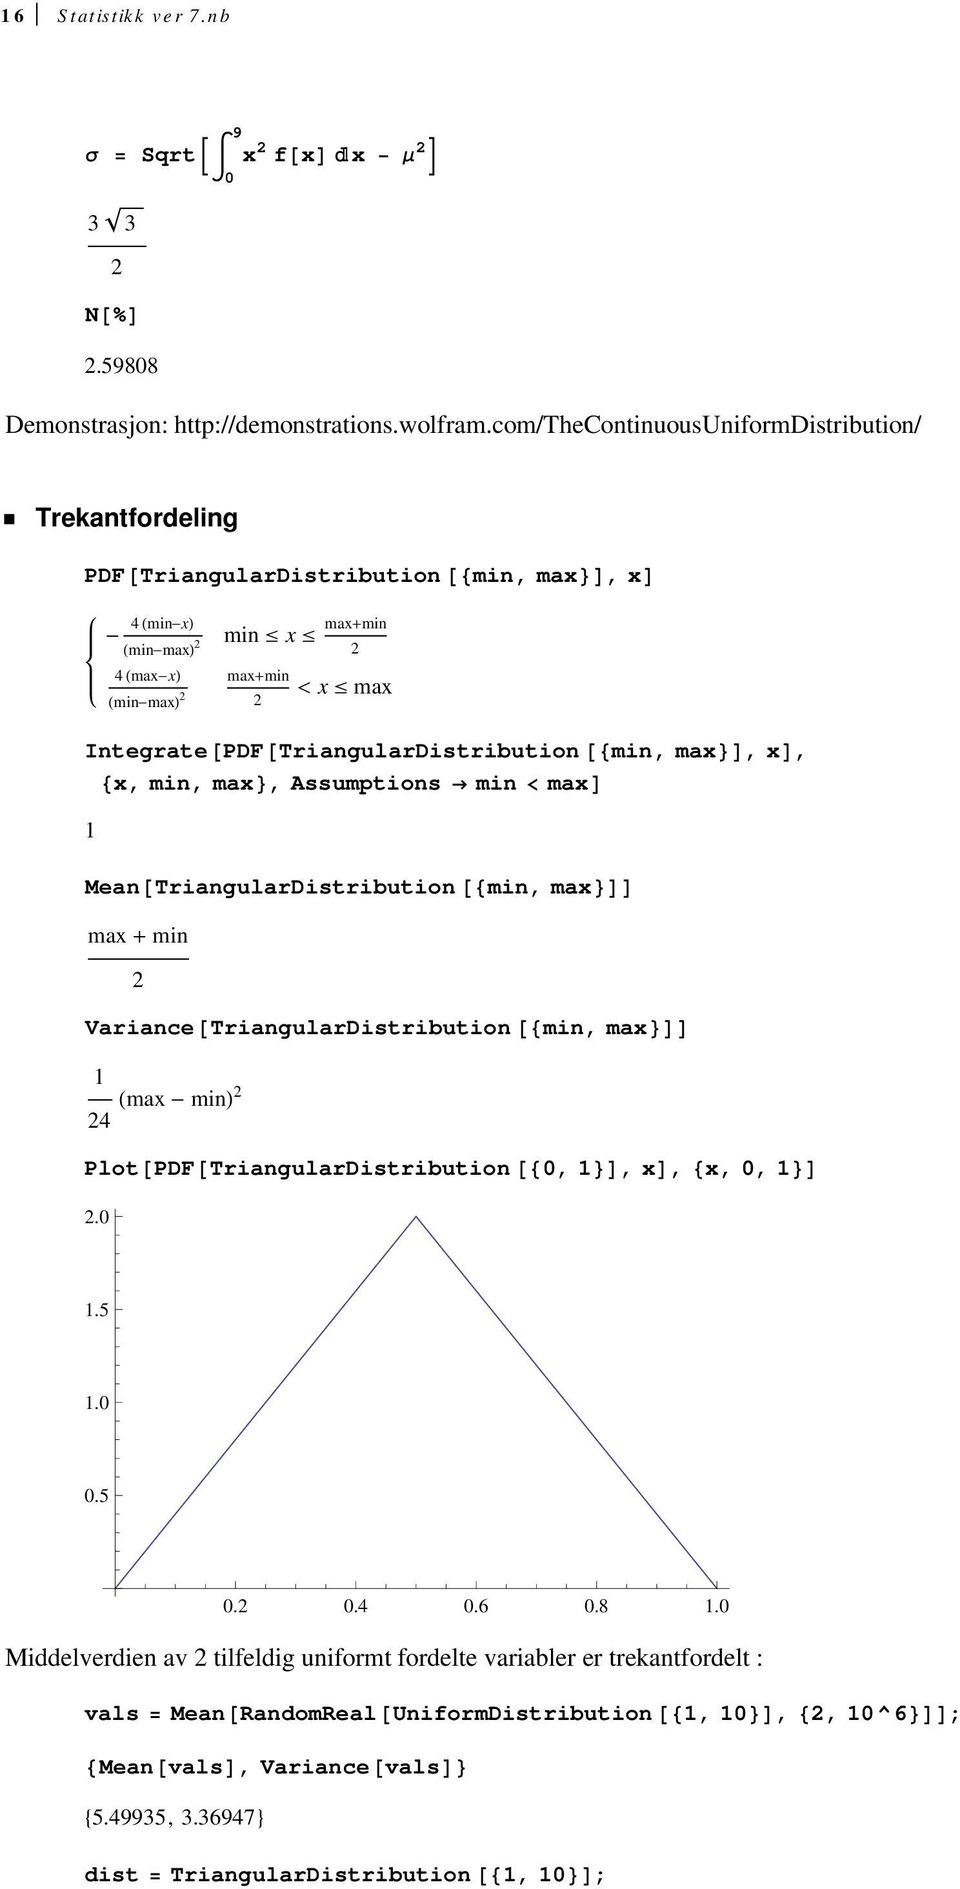 TriangularDistribution min, max, x, x, min, max, Assumptions min max Mean TriangularDistribution min, max max min Variance TriangularDistribution min, max max min 4 Plot PDF